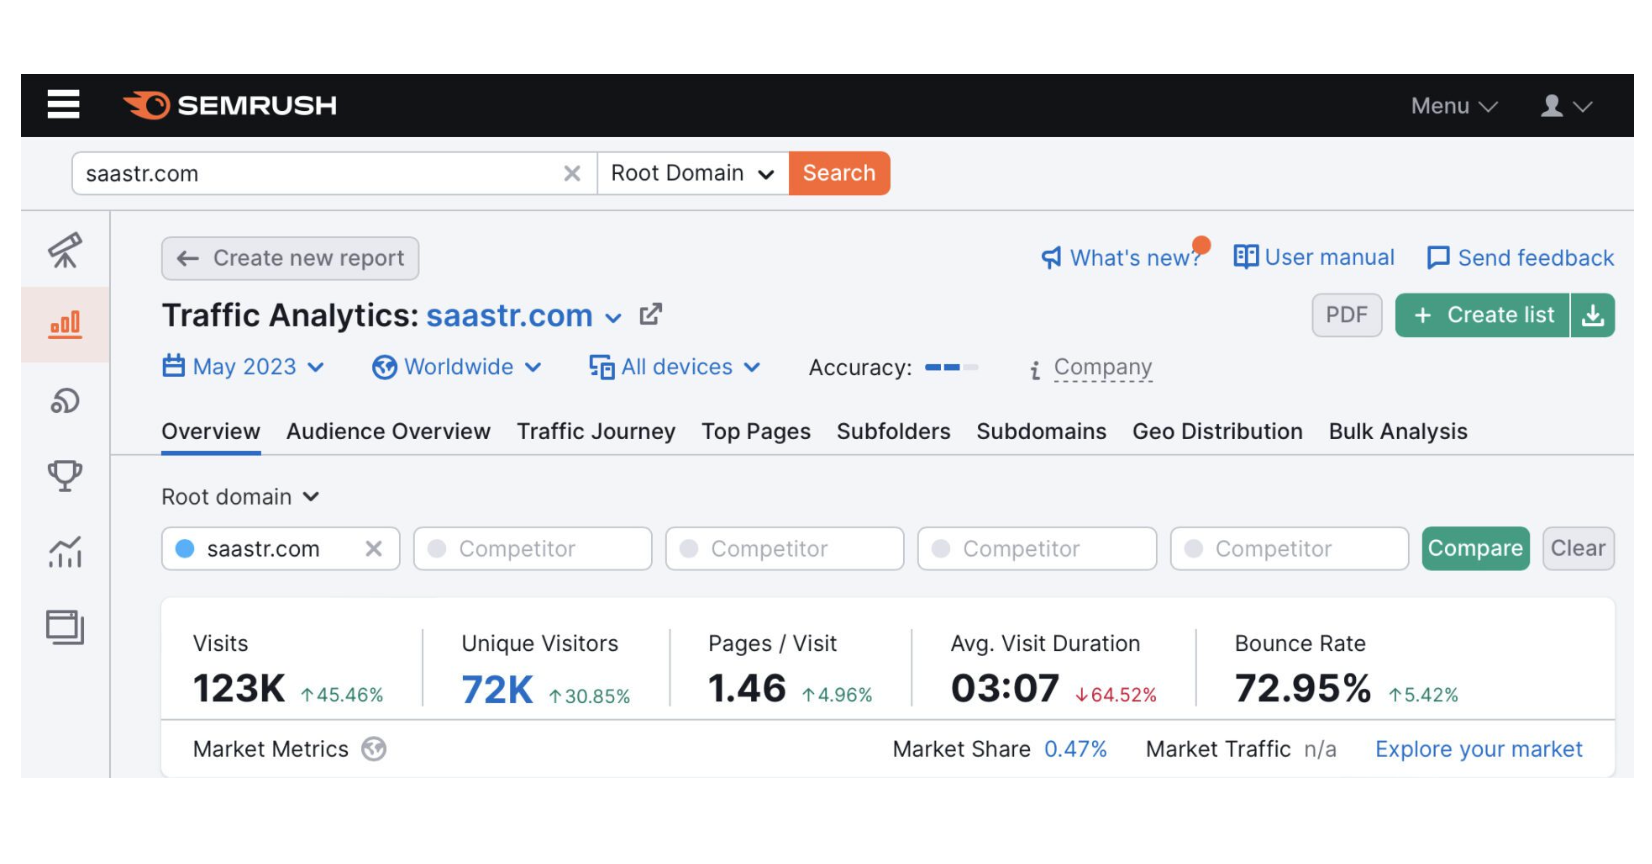 营销SaaS SemRush 2.9 亿美元年收入的五个经营数据分析